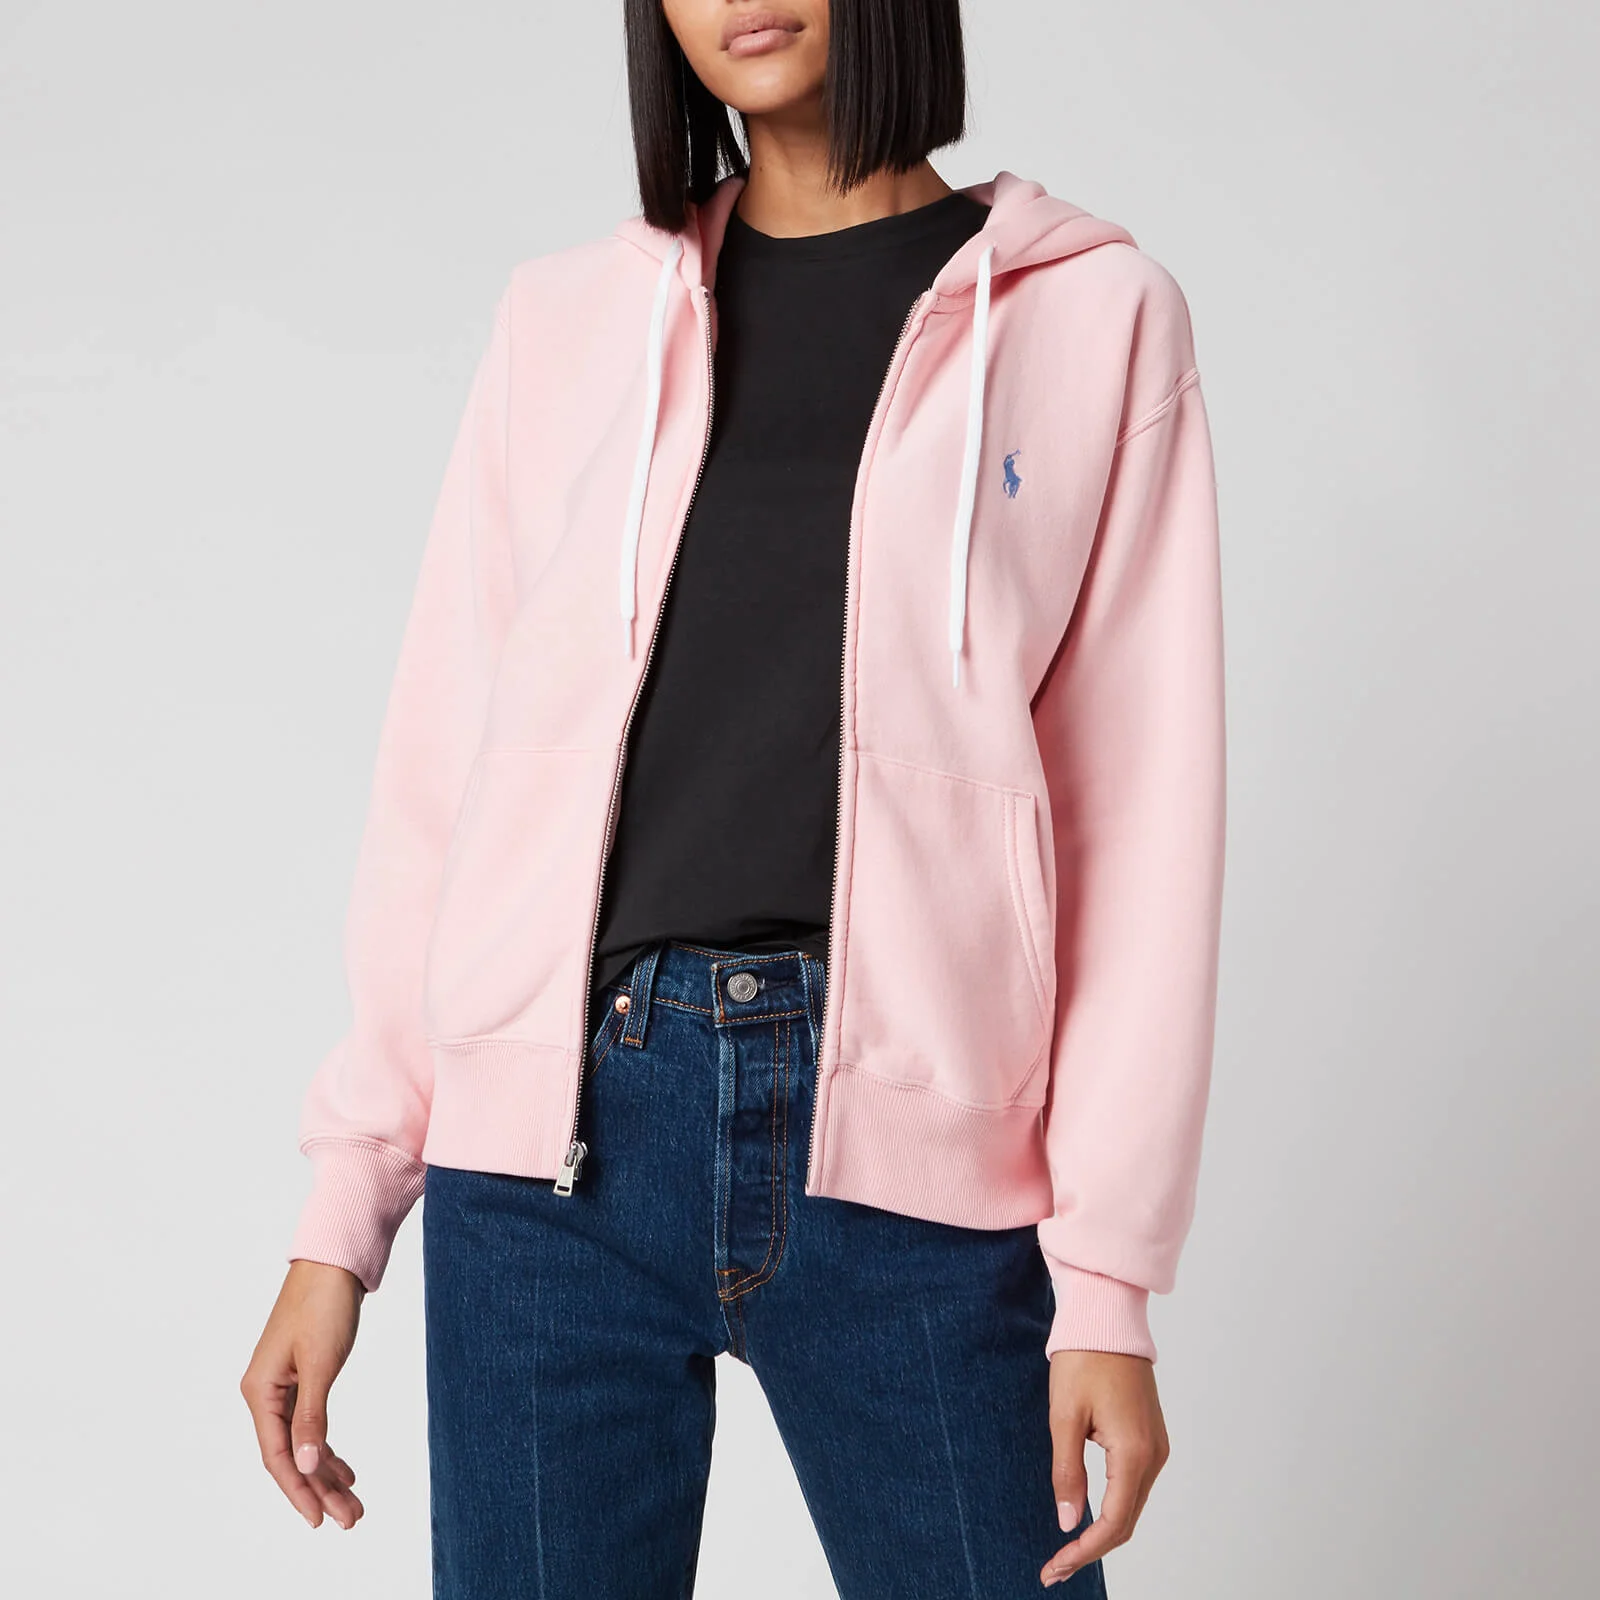 Polo Ralph Lauren Women's Zip Up Hooded Sweatshirt - Resort Pink Image 1